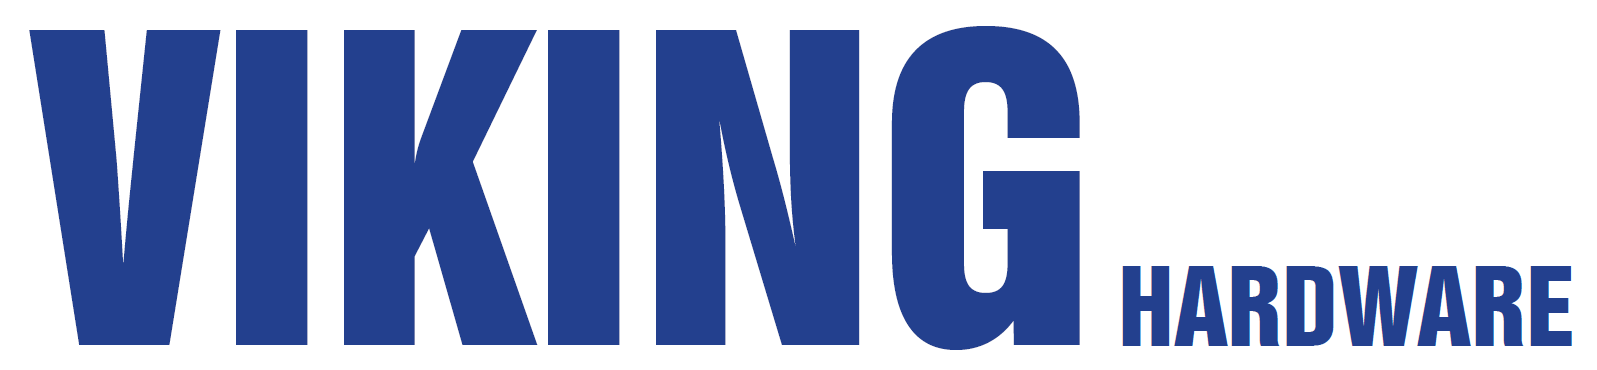 Viking Hardware Logo